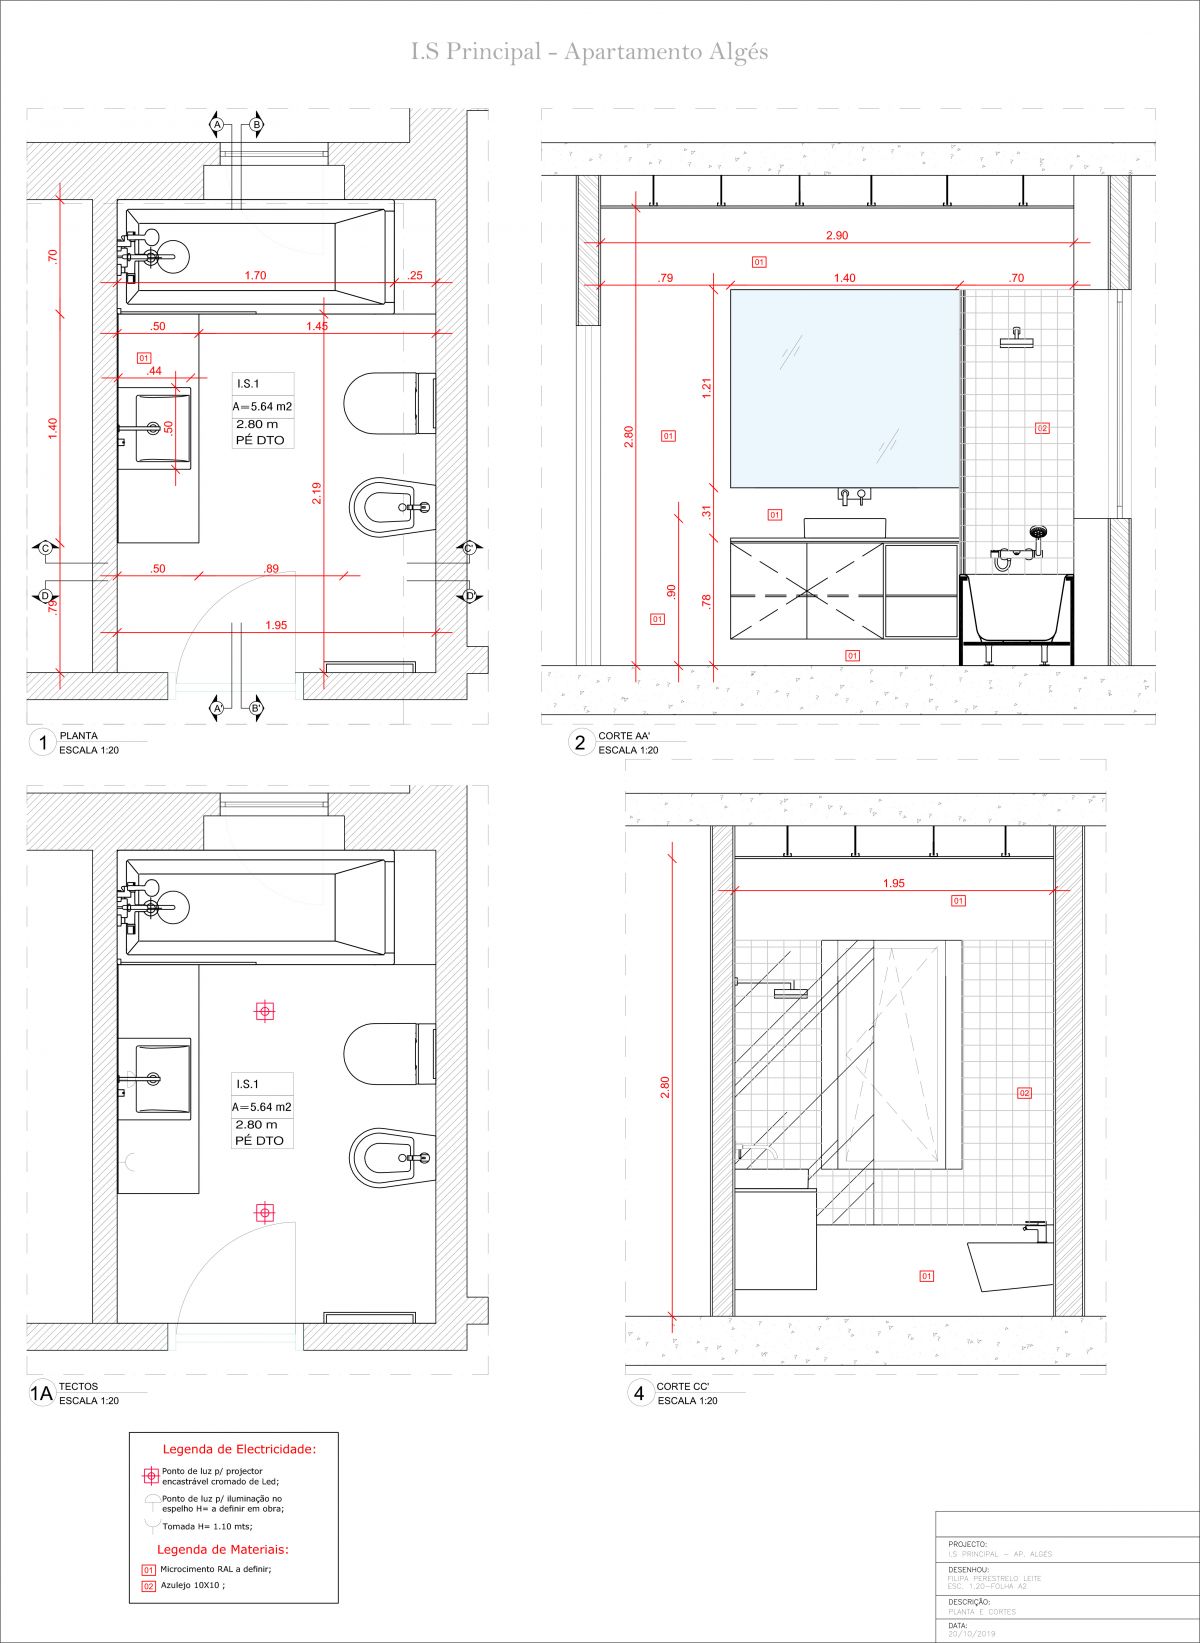 Filipa Perestrelo Leite - Design de Interiores - Lisboa - Organização da Casa